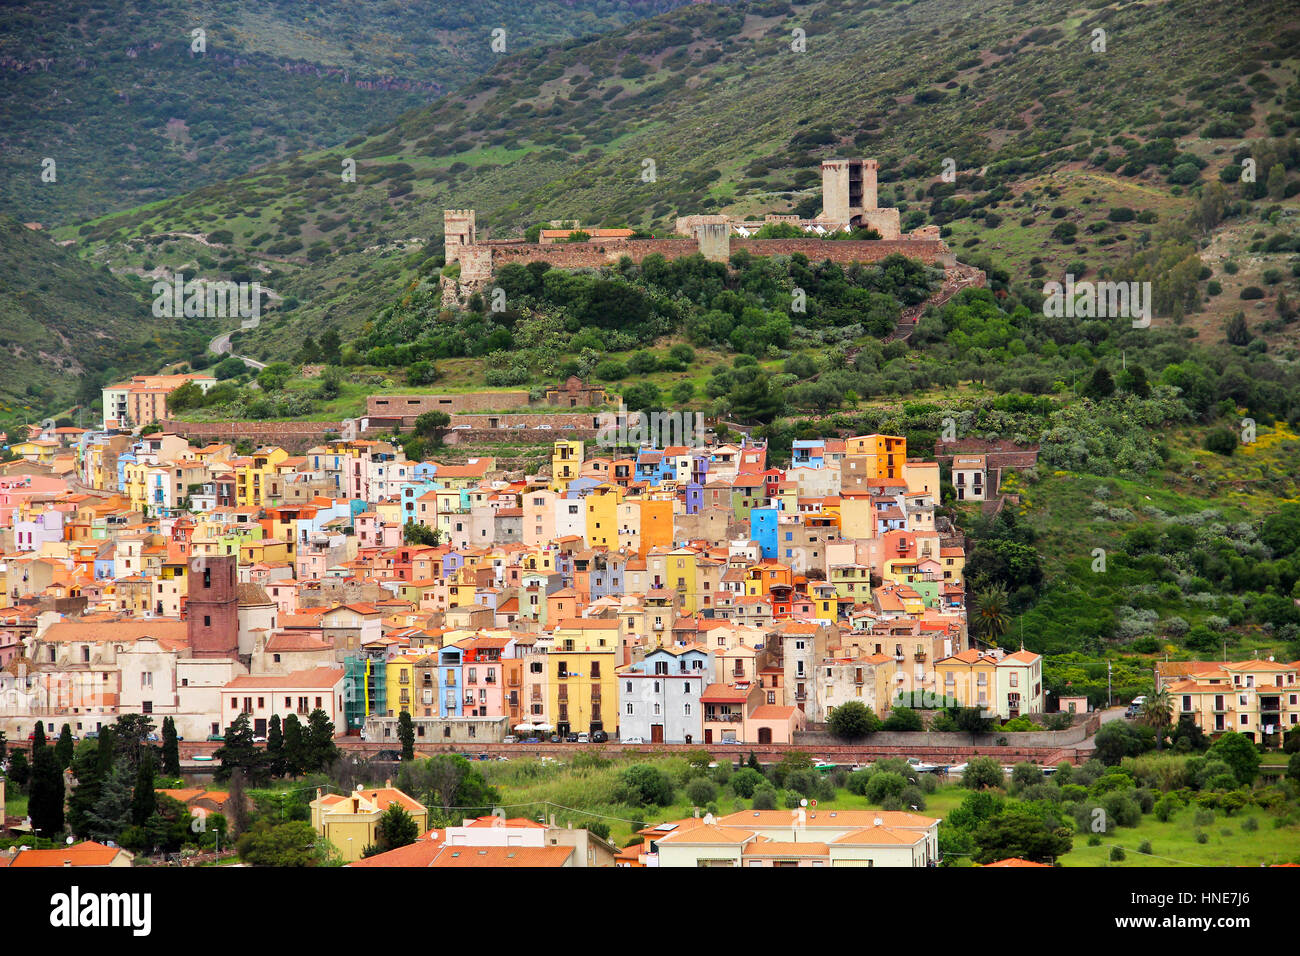 Bosa aux maisons colorées et le château de Serravalle, province d'Oristano, Sardaigne, Italie Banque D'Images